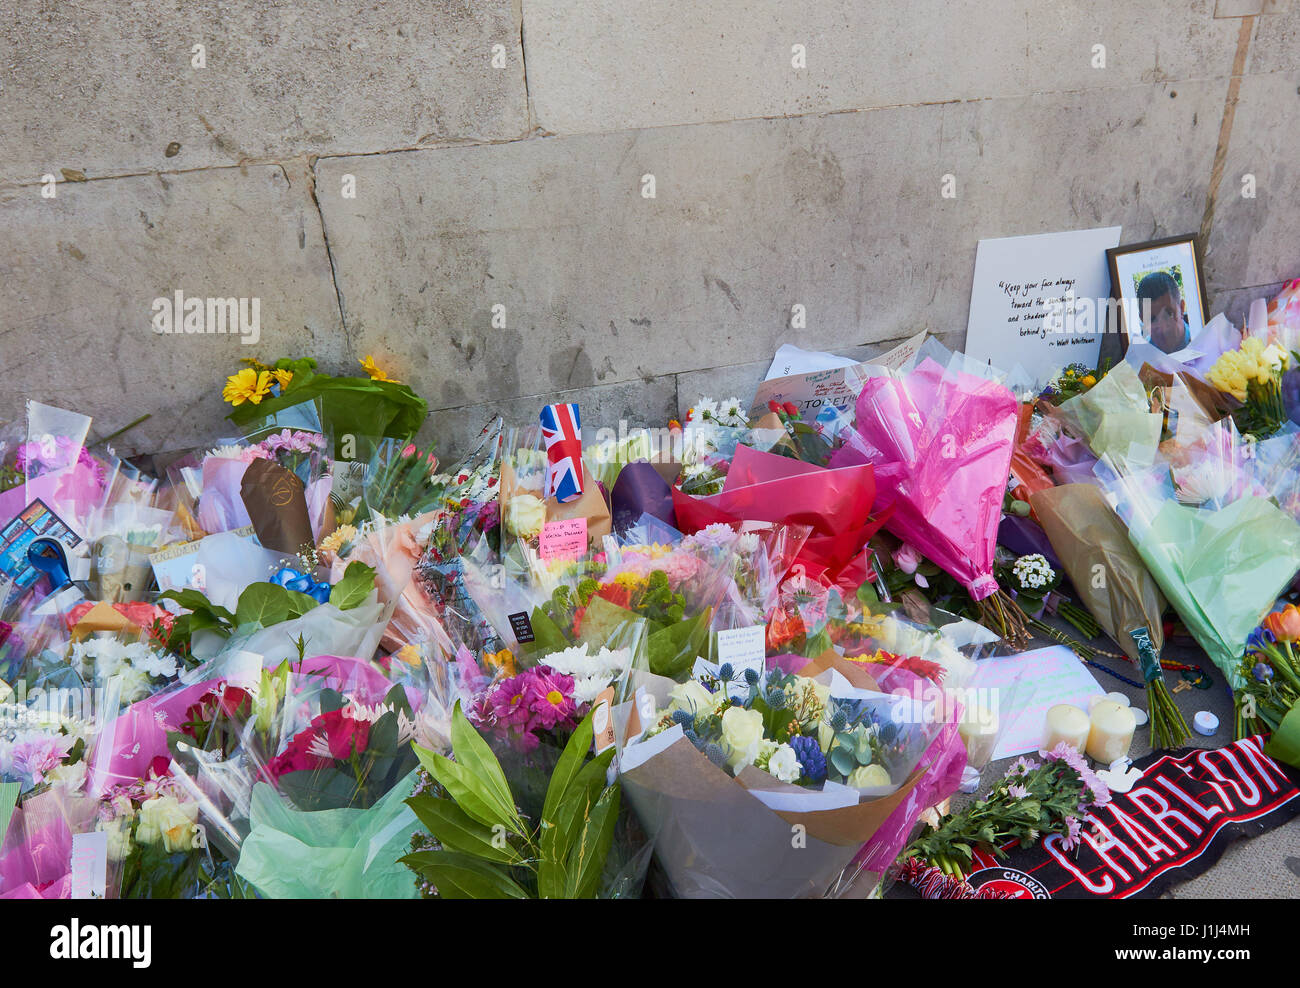 Des fleurs et des hommages à PC Keith Palmer et autres victimes de l'attaque terroriste de Westminster, Londres, Angleterre Banque D'Images